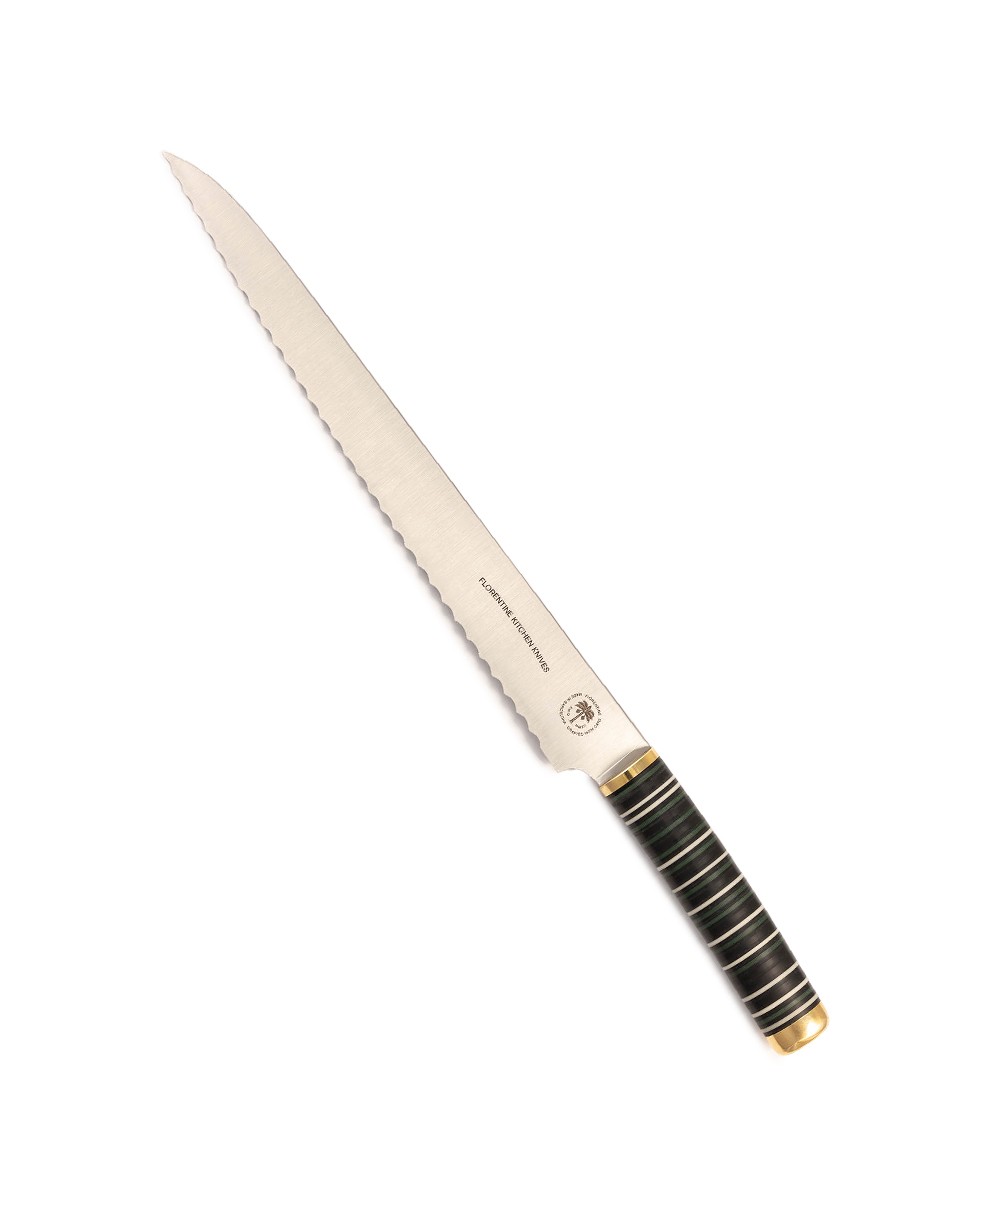 Produktbild des Florentine Brotmessers  in grün von Florentine Kitchen Knives im RAUM concept store 